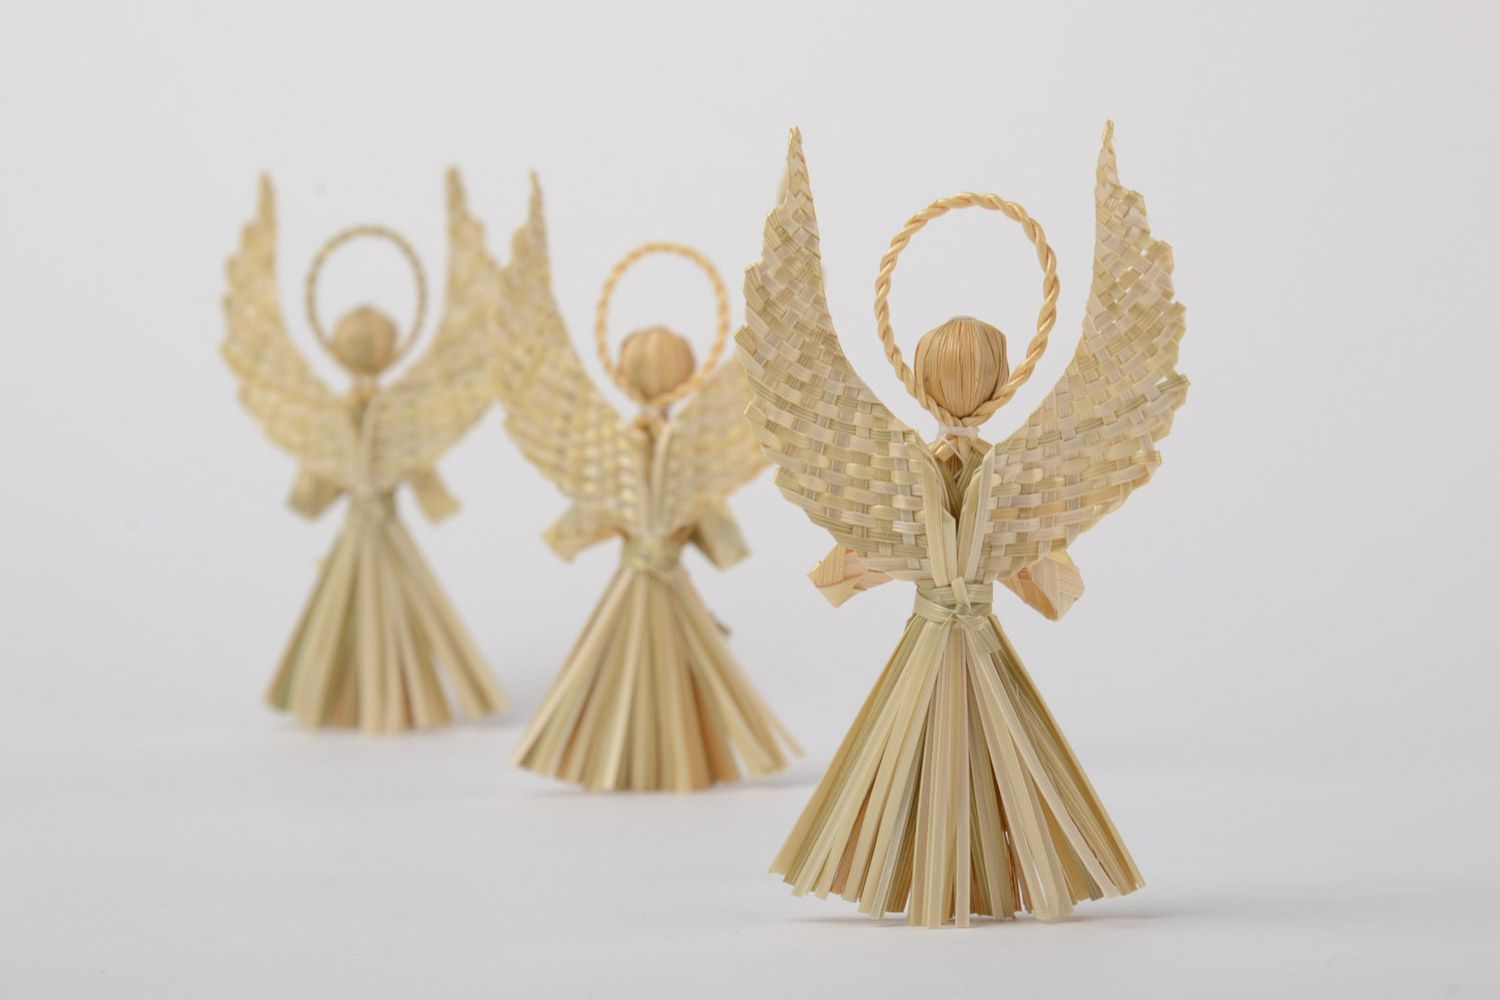 Geflochtene Interieur Anhänger in Form von Engeln Set 3 Stück Öko Dekor handmade foto 4